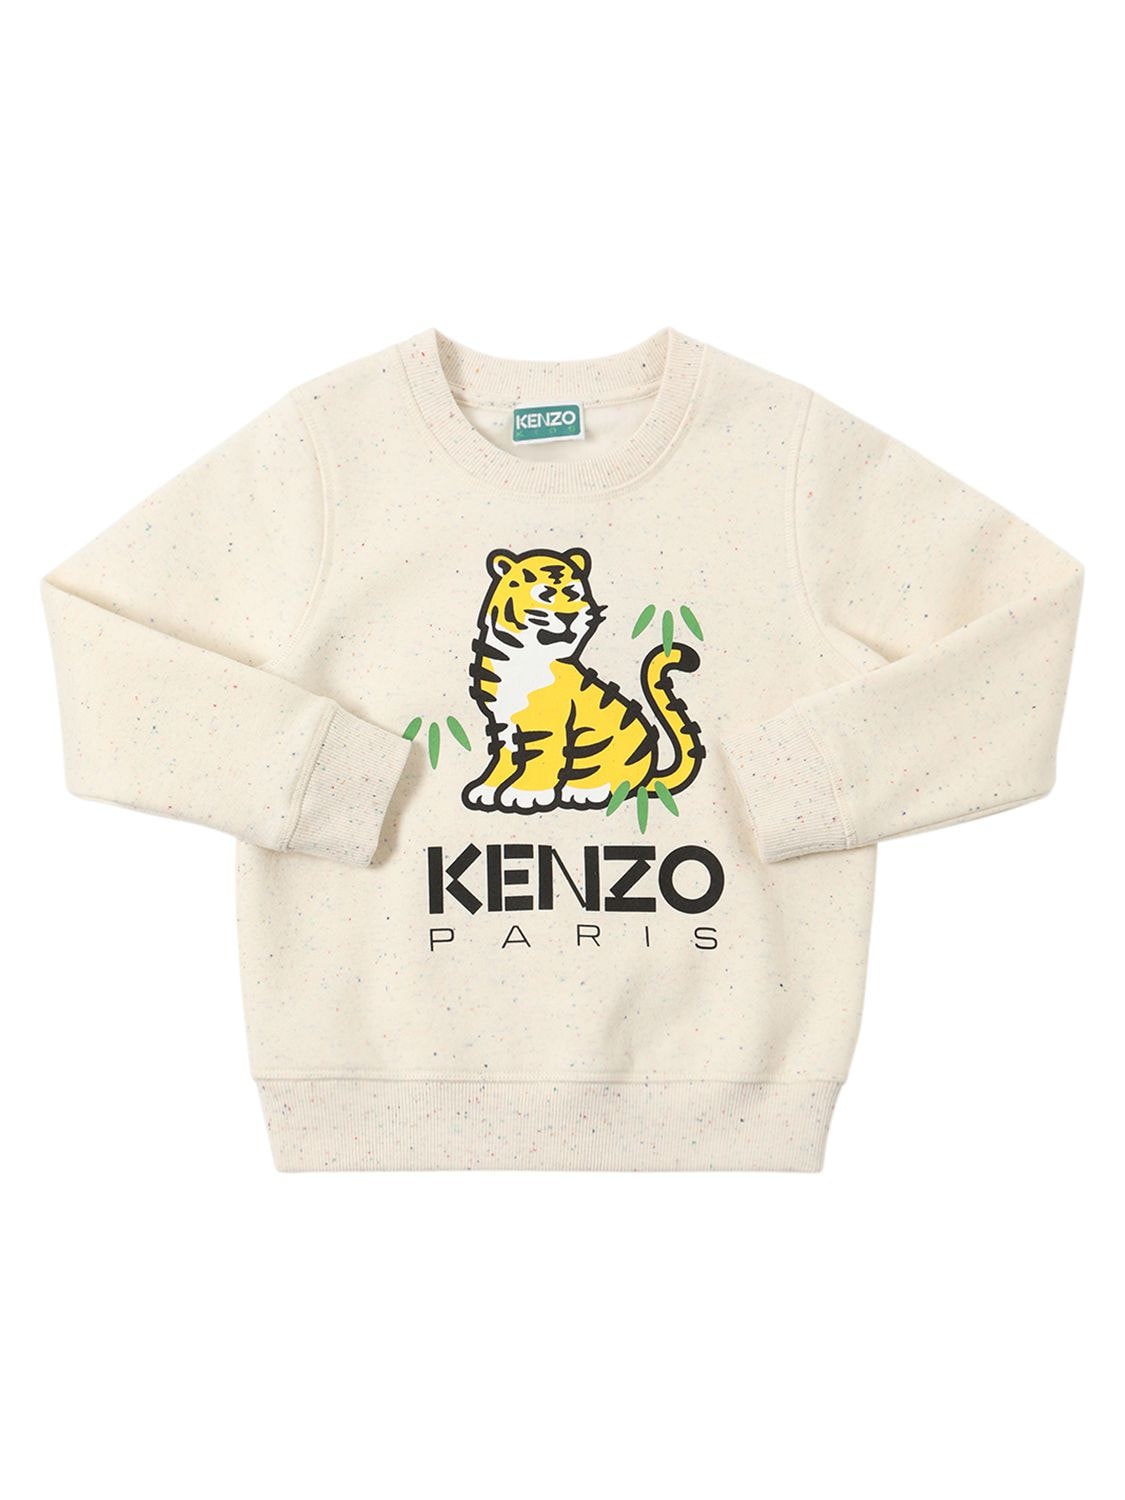 Kenzo Kids' Printed Logo Cotton Jersey T-shirt In White